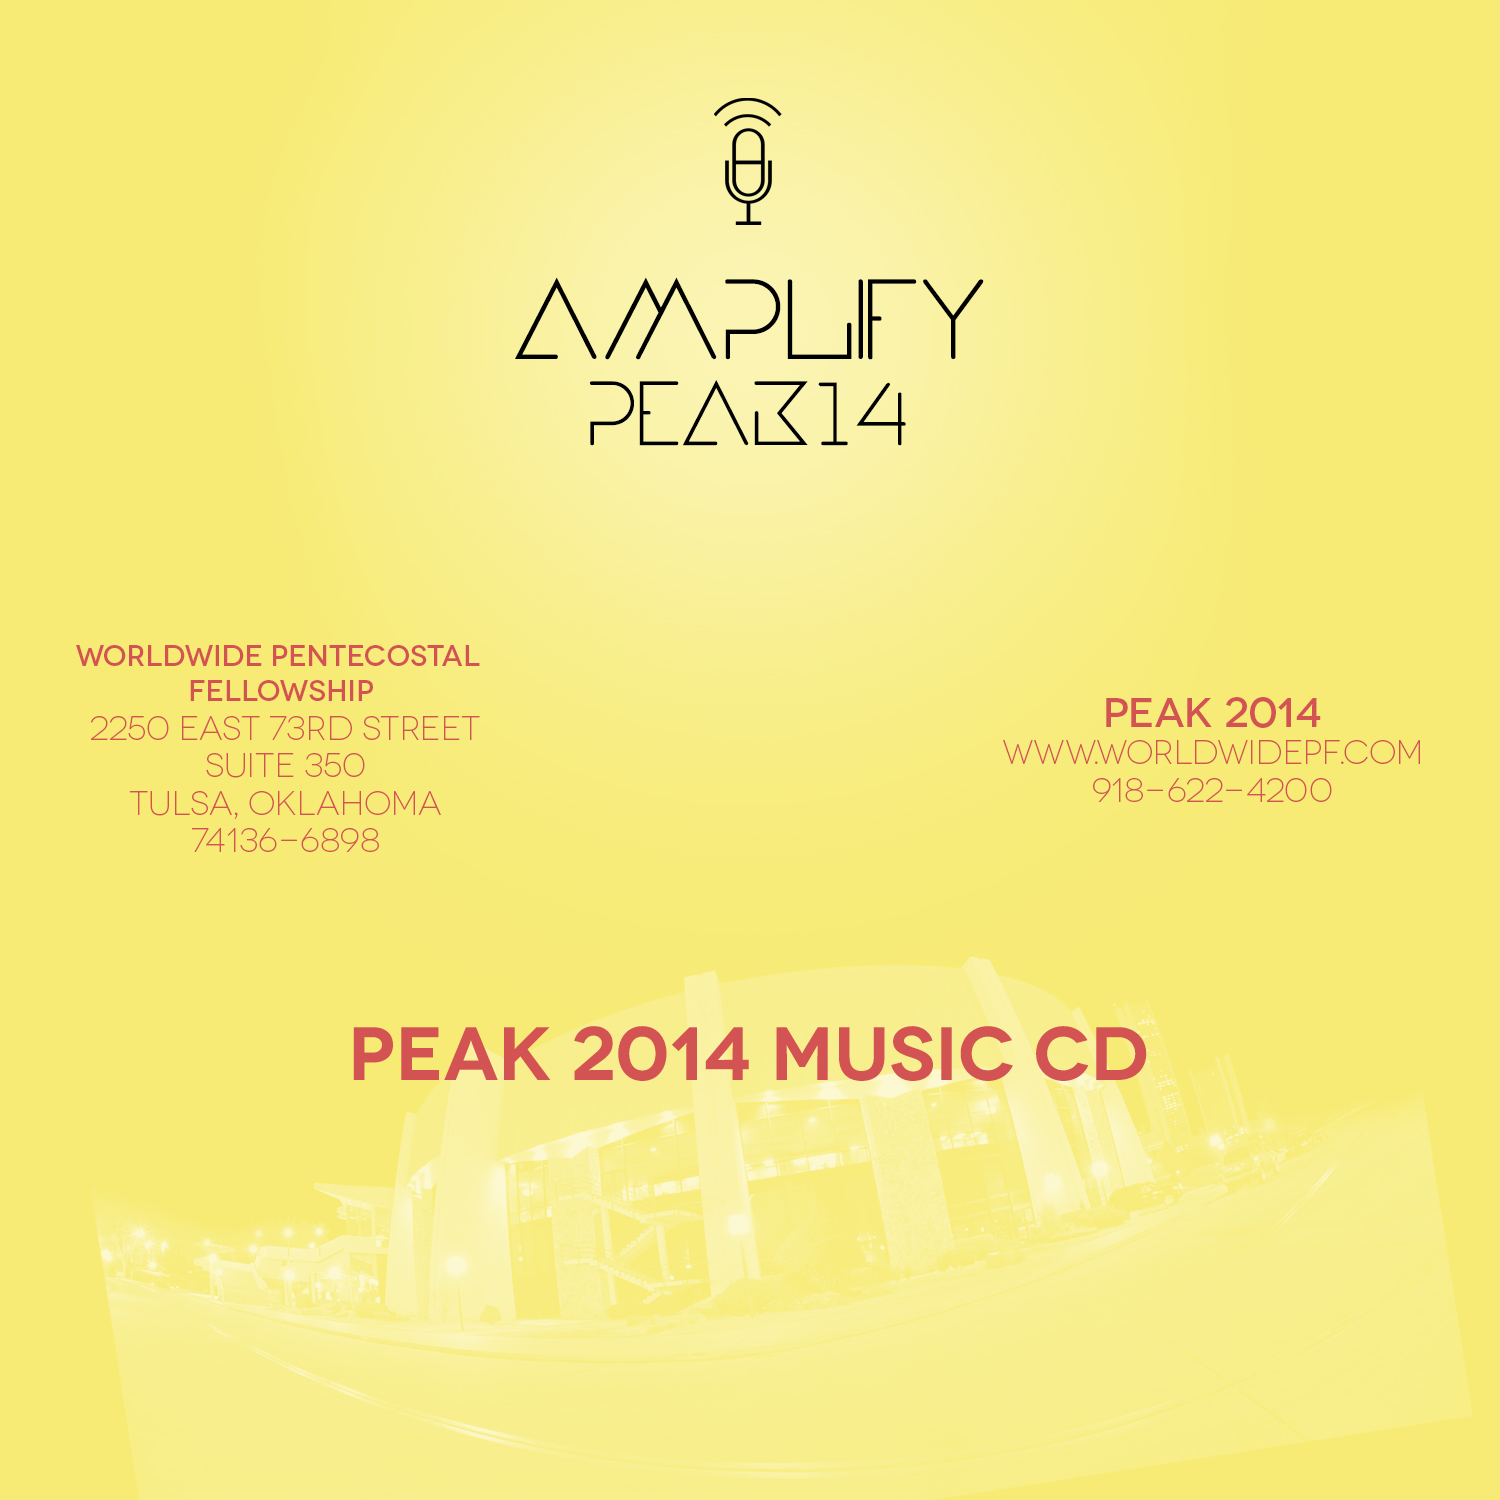 2014 PEAK Single CD